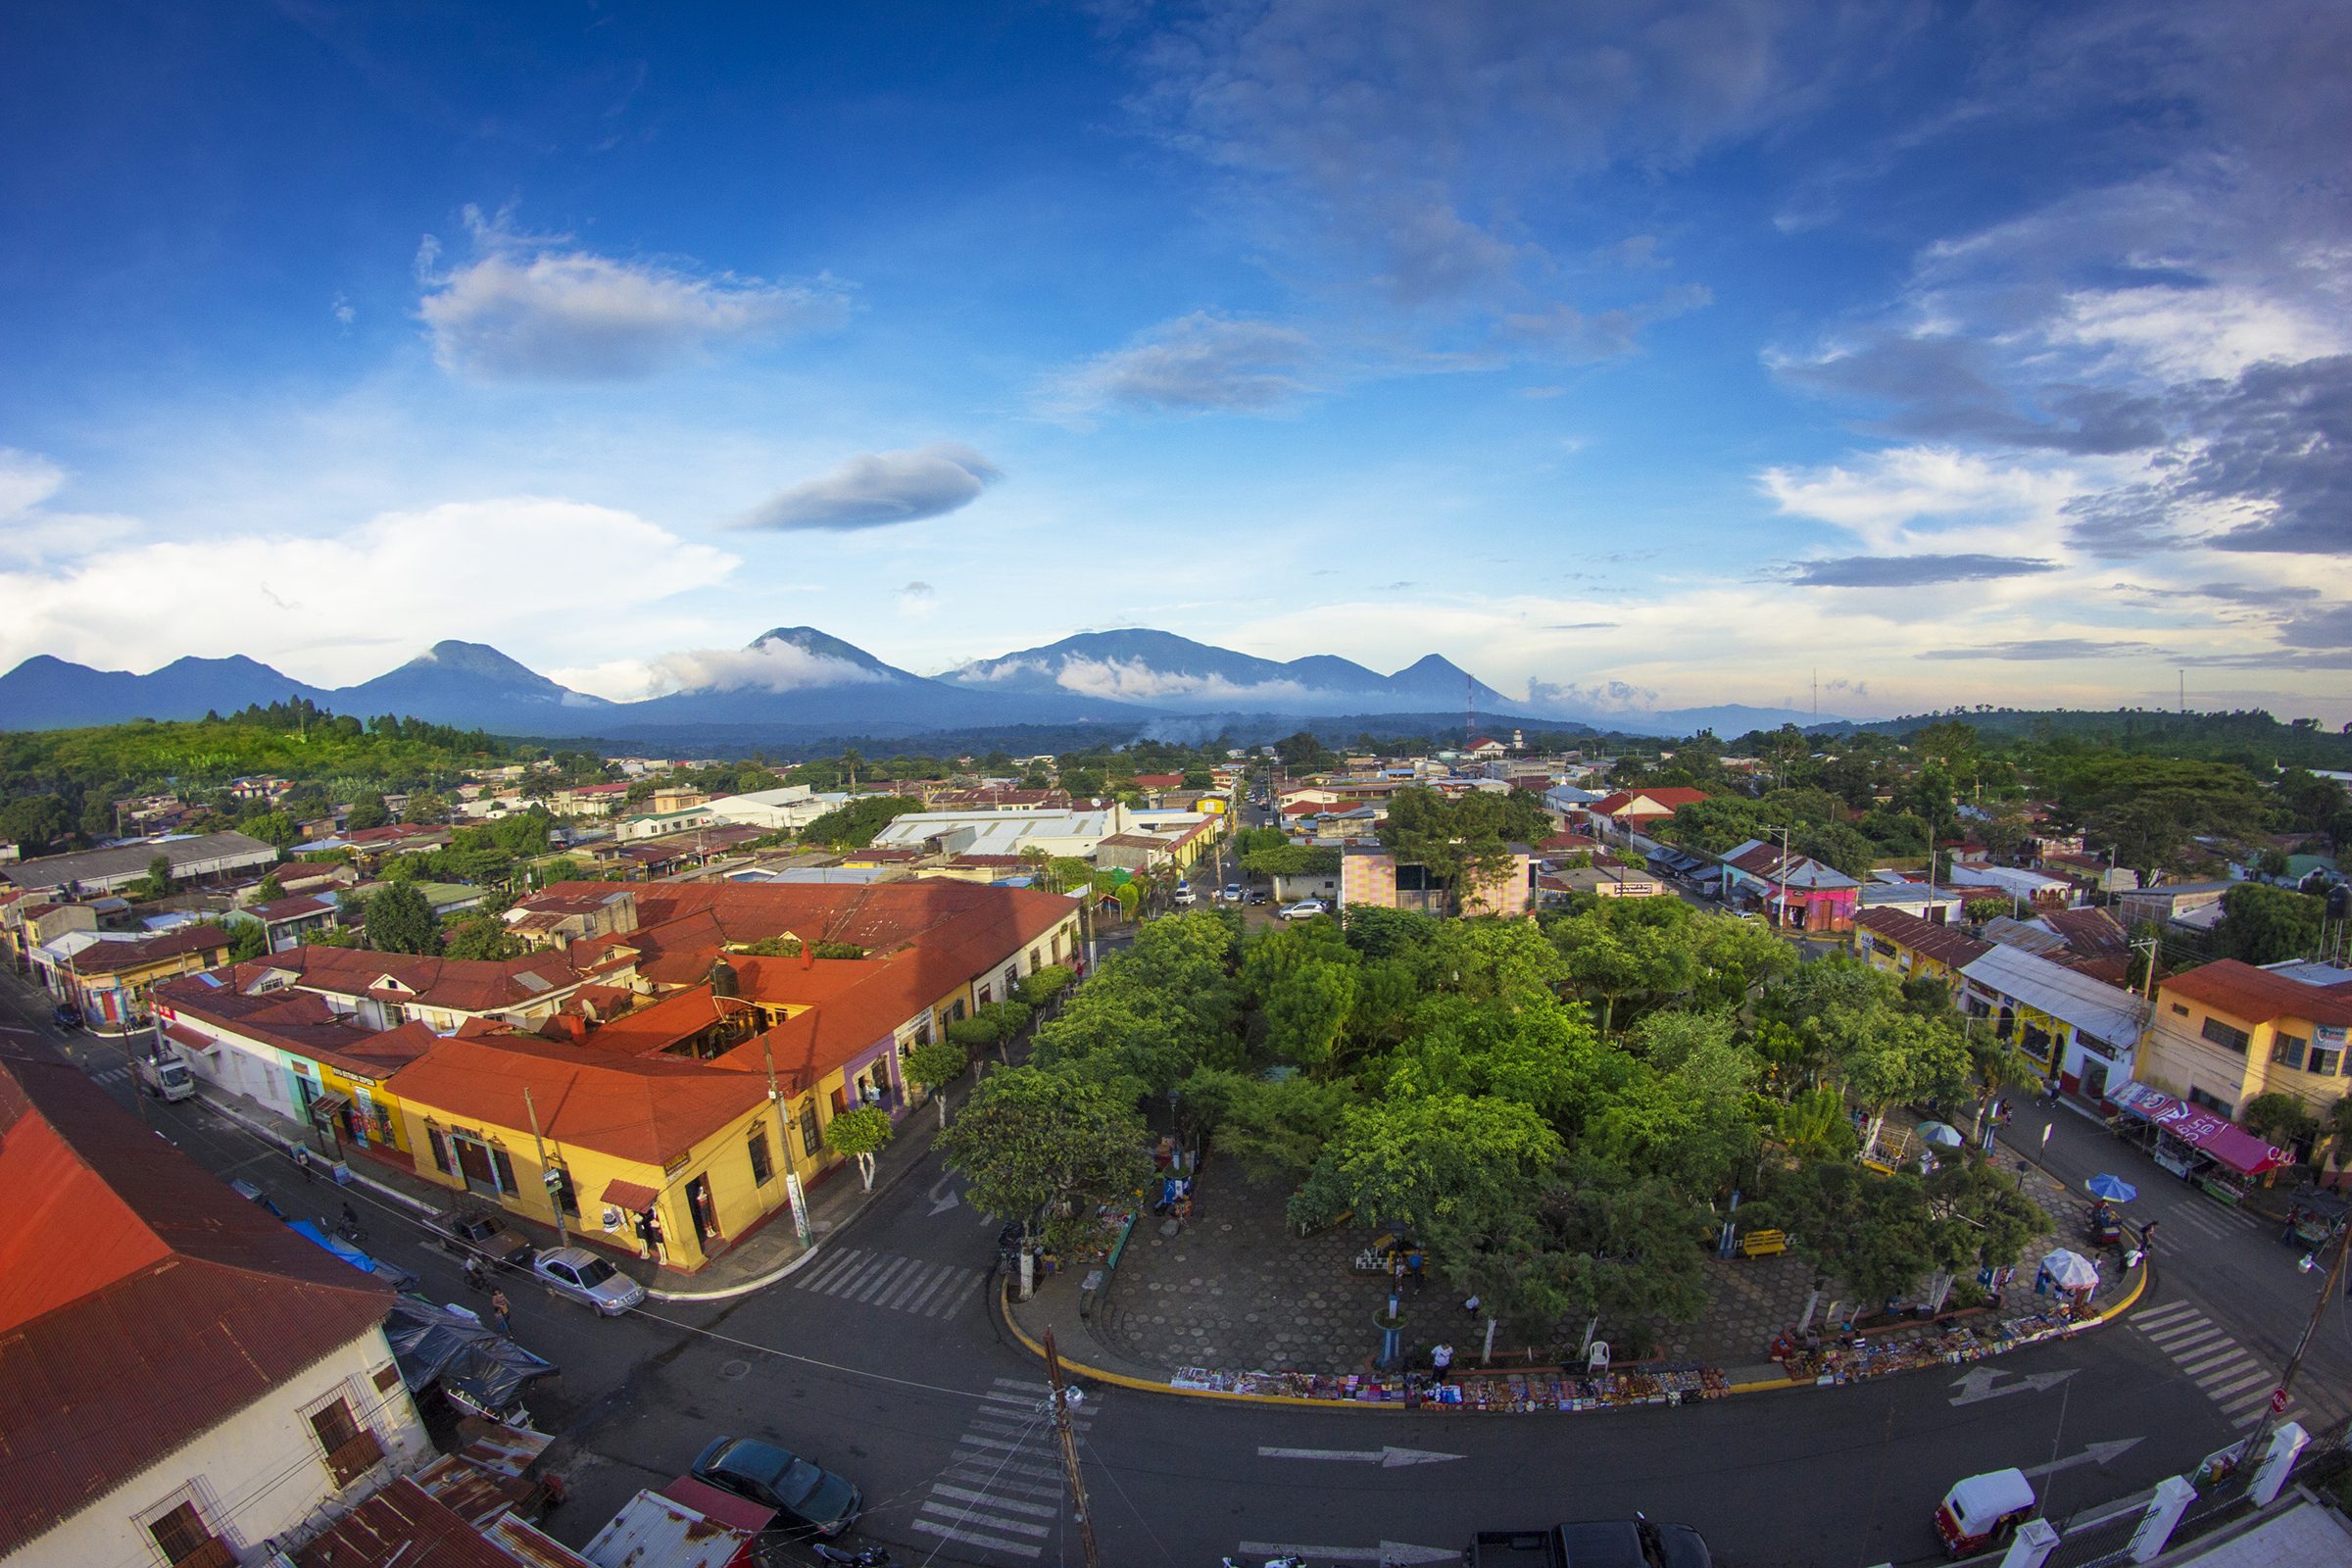 2.051.000 extranjeros hicieron turismo en El Salvador en el 2016